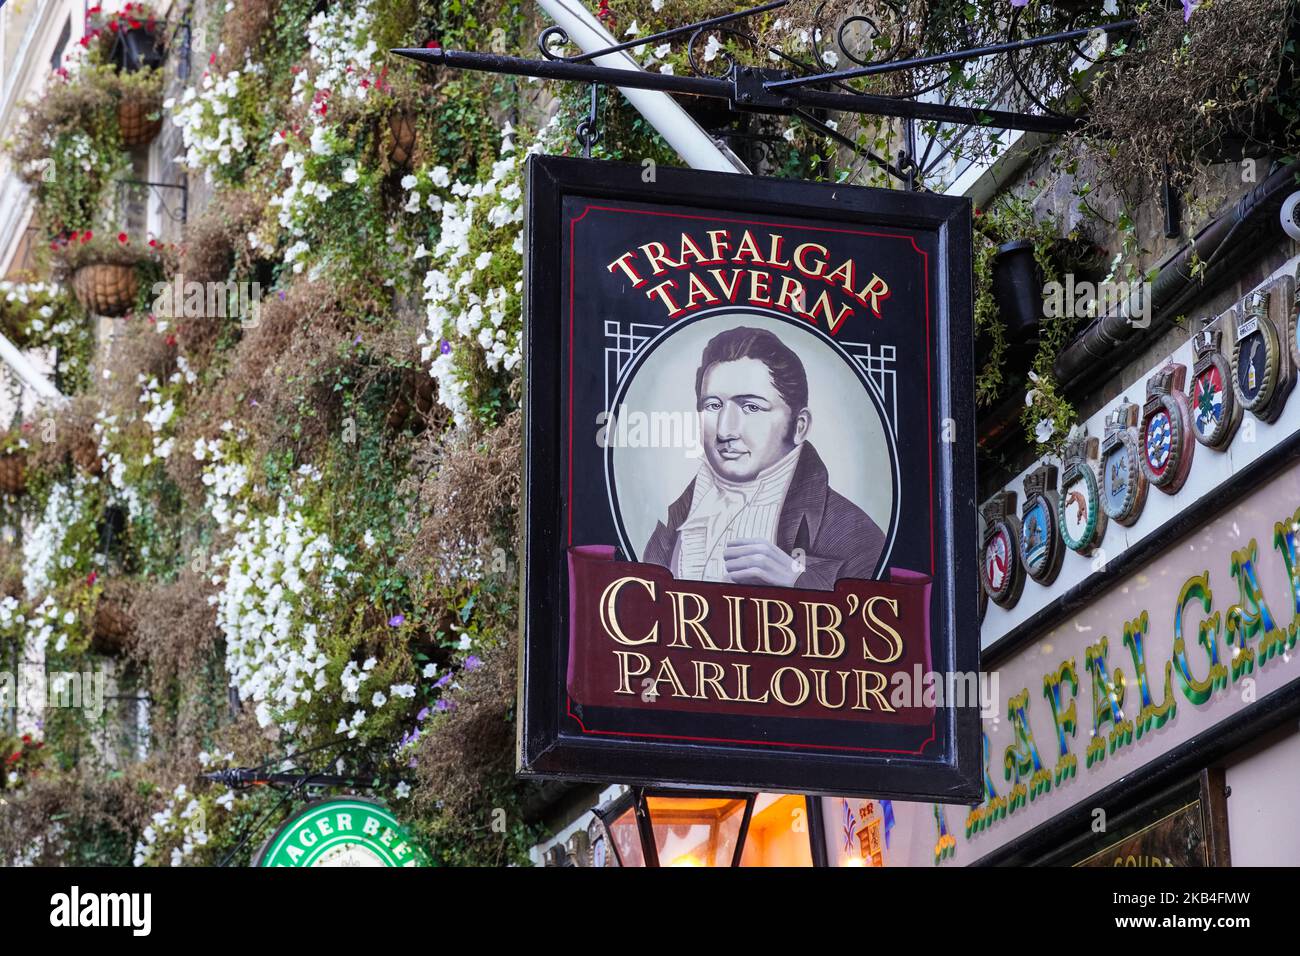 Cribb's Parlour at Trafalgar Tavern pub and Restaurant a Greenwich, Londra Inghilterra Regno Unito Regno Unito Foto Stock